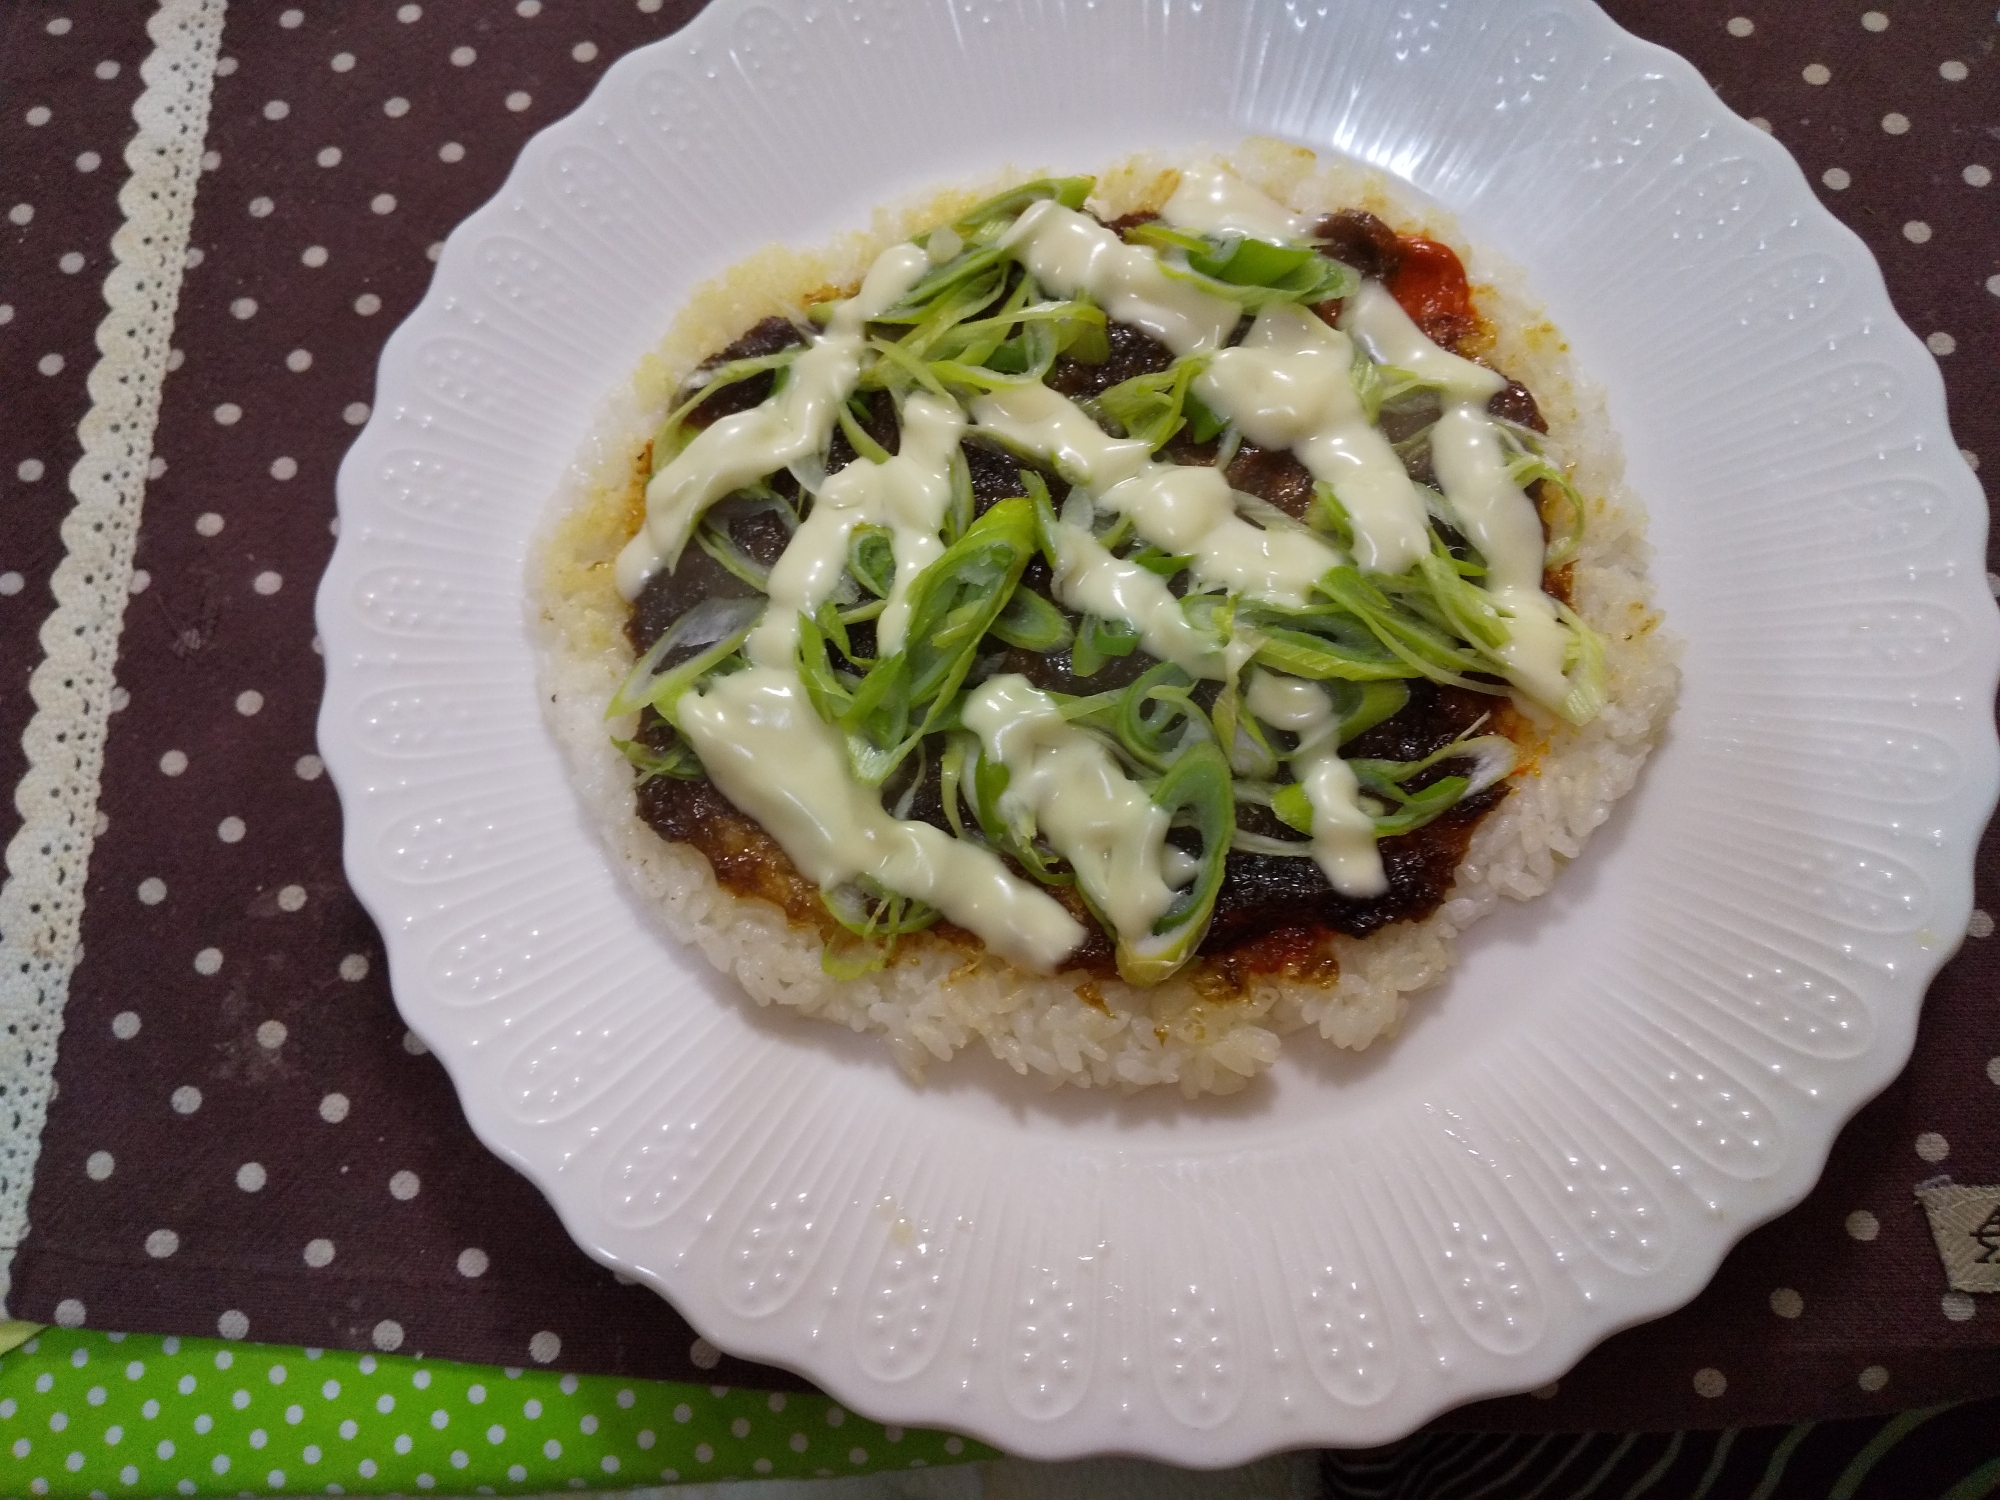 佃煮海苔と葱のライスピザ